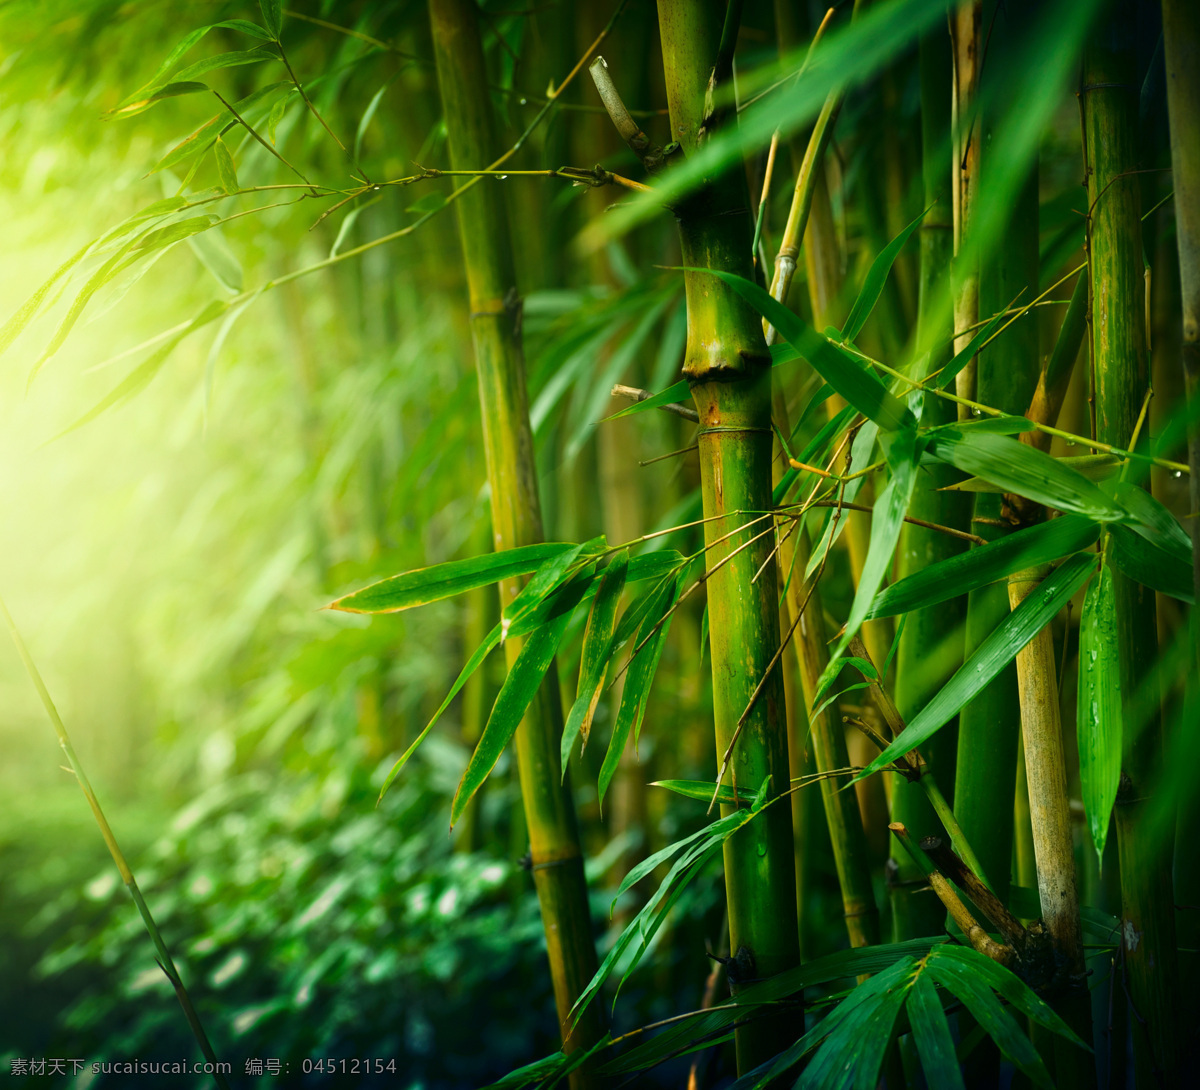 绿色 竹子 竹叶 阳光 光线 美丽树林 森林风景 自然风景 梦幻美景 山水风景 风景图片